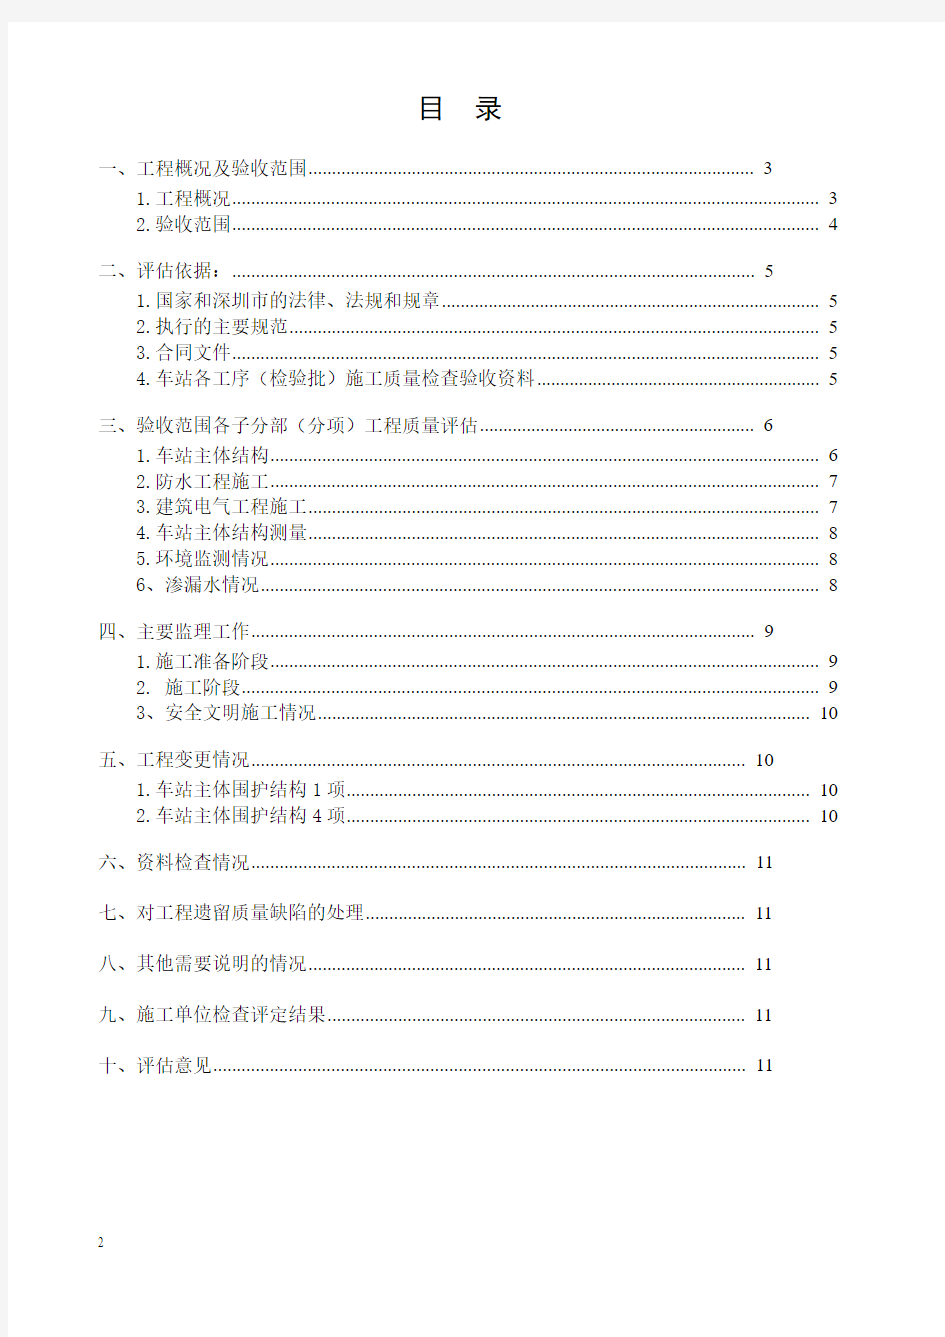 深圳地铁1号线续建工程土建3标深大站主体结构质量评估报告20090706(主体结构)ok